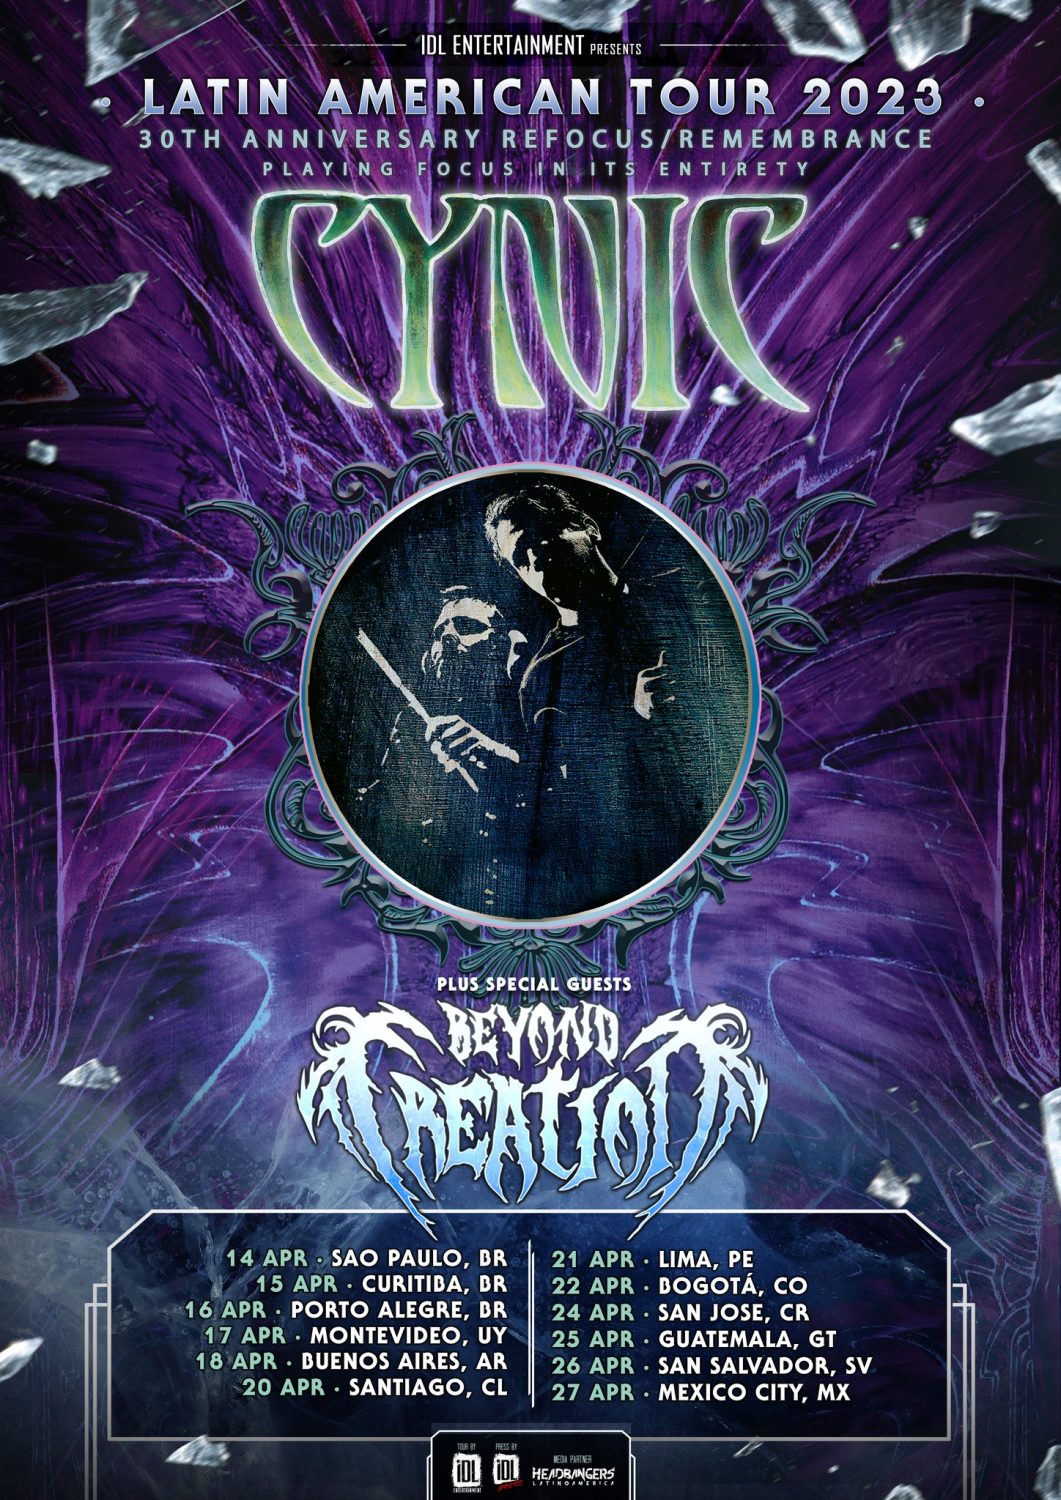 Cynic Latinoamerica Poster 1061x1500 - CYNIC confirma las fechas de su gira por Latinoamérica junto a BEYOND CREATION en 2023